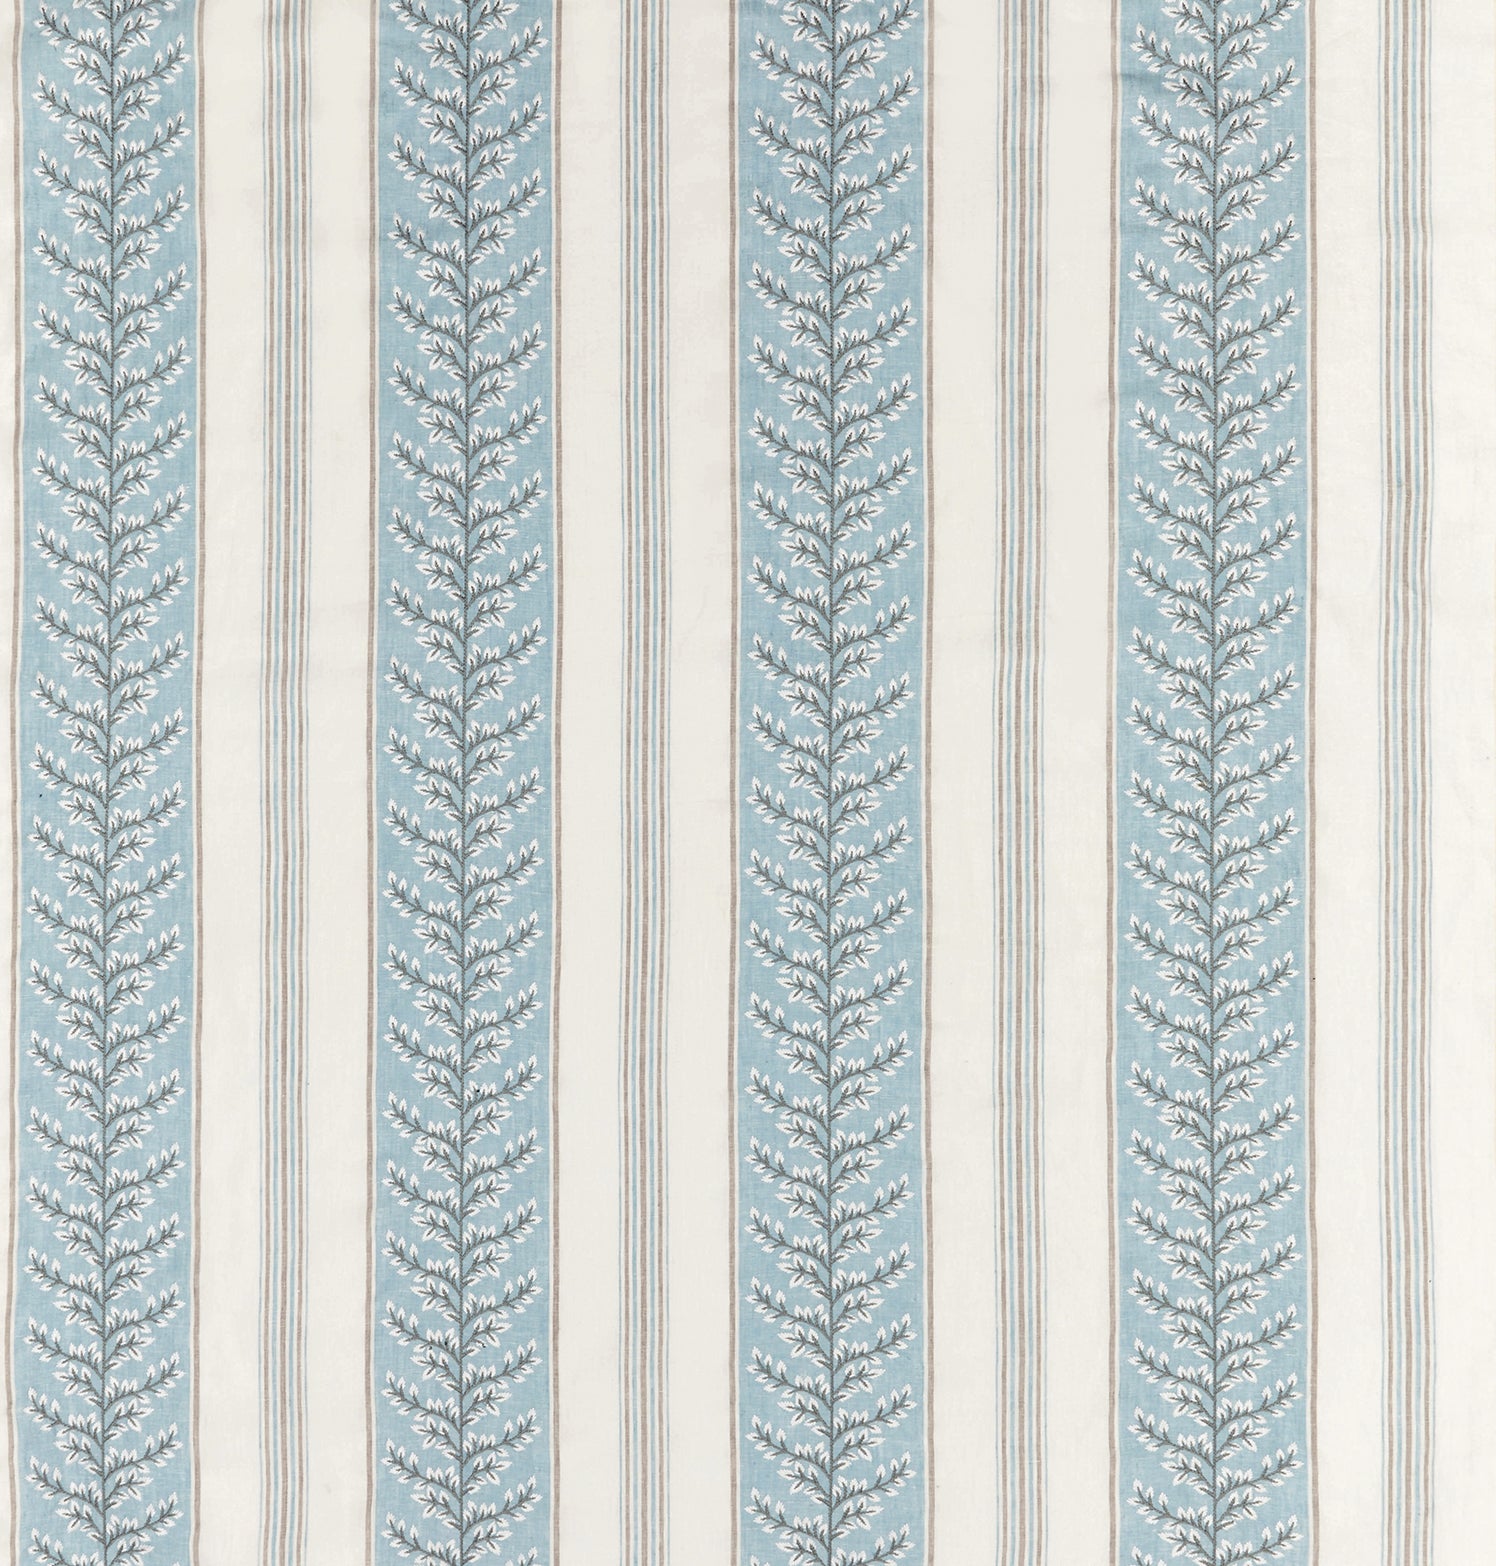 Nina Campbell Fabric - Woodbridge Manningtree China Blue NCF4502-06